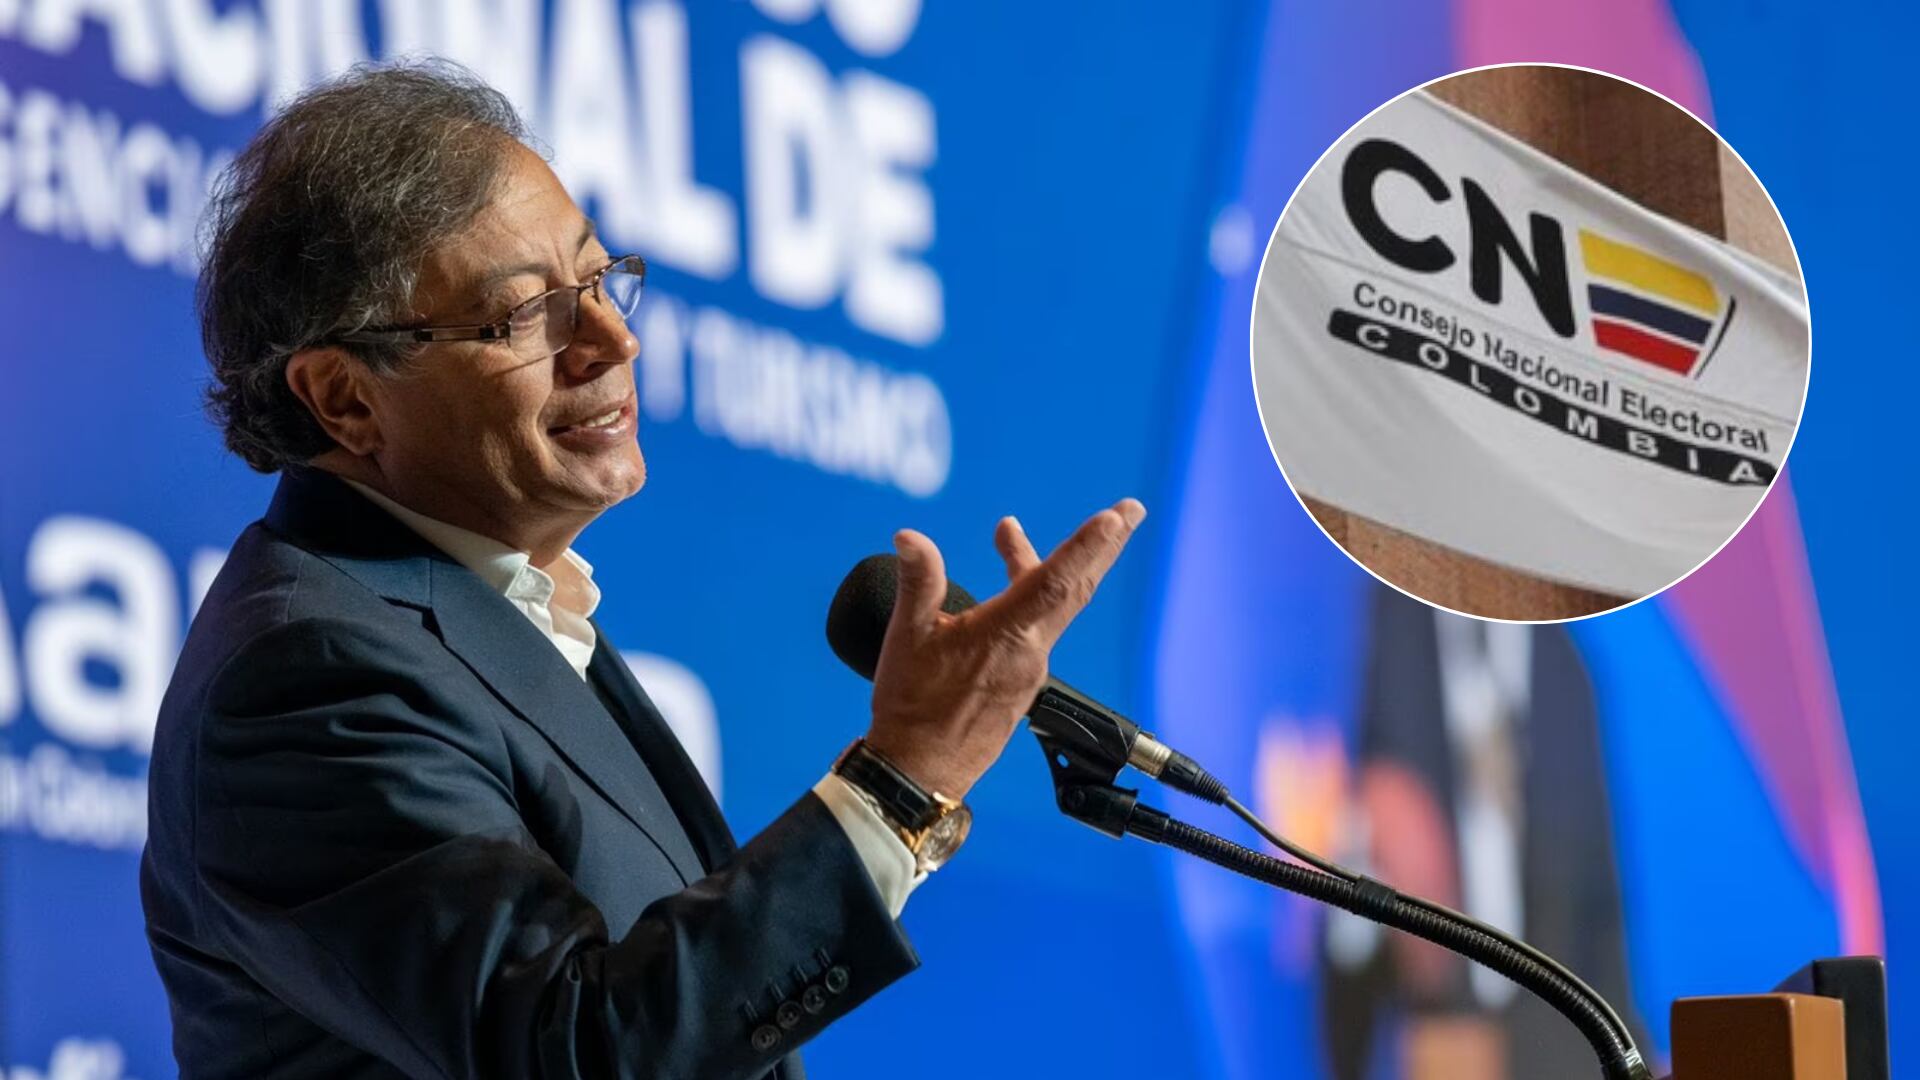 El CNE le hizo un llamado tajante al presidente Petro para que se ajuste al respeto de las decisiones del tribunal electoral - crédito Presidencia - Colprensa